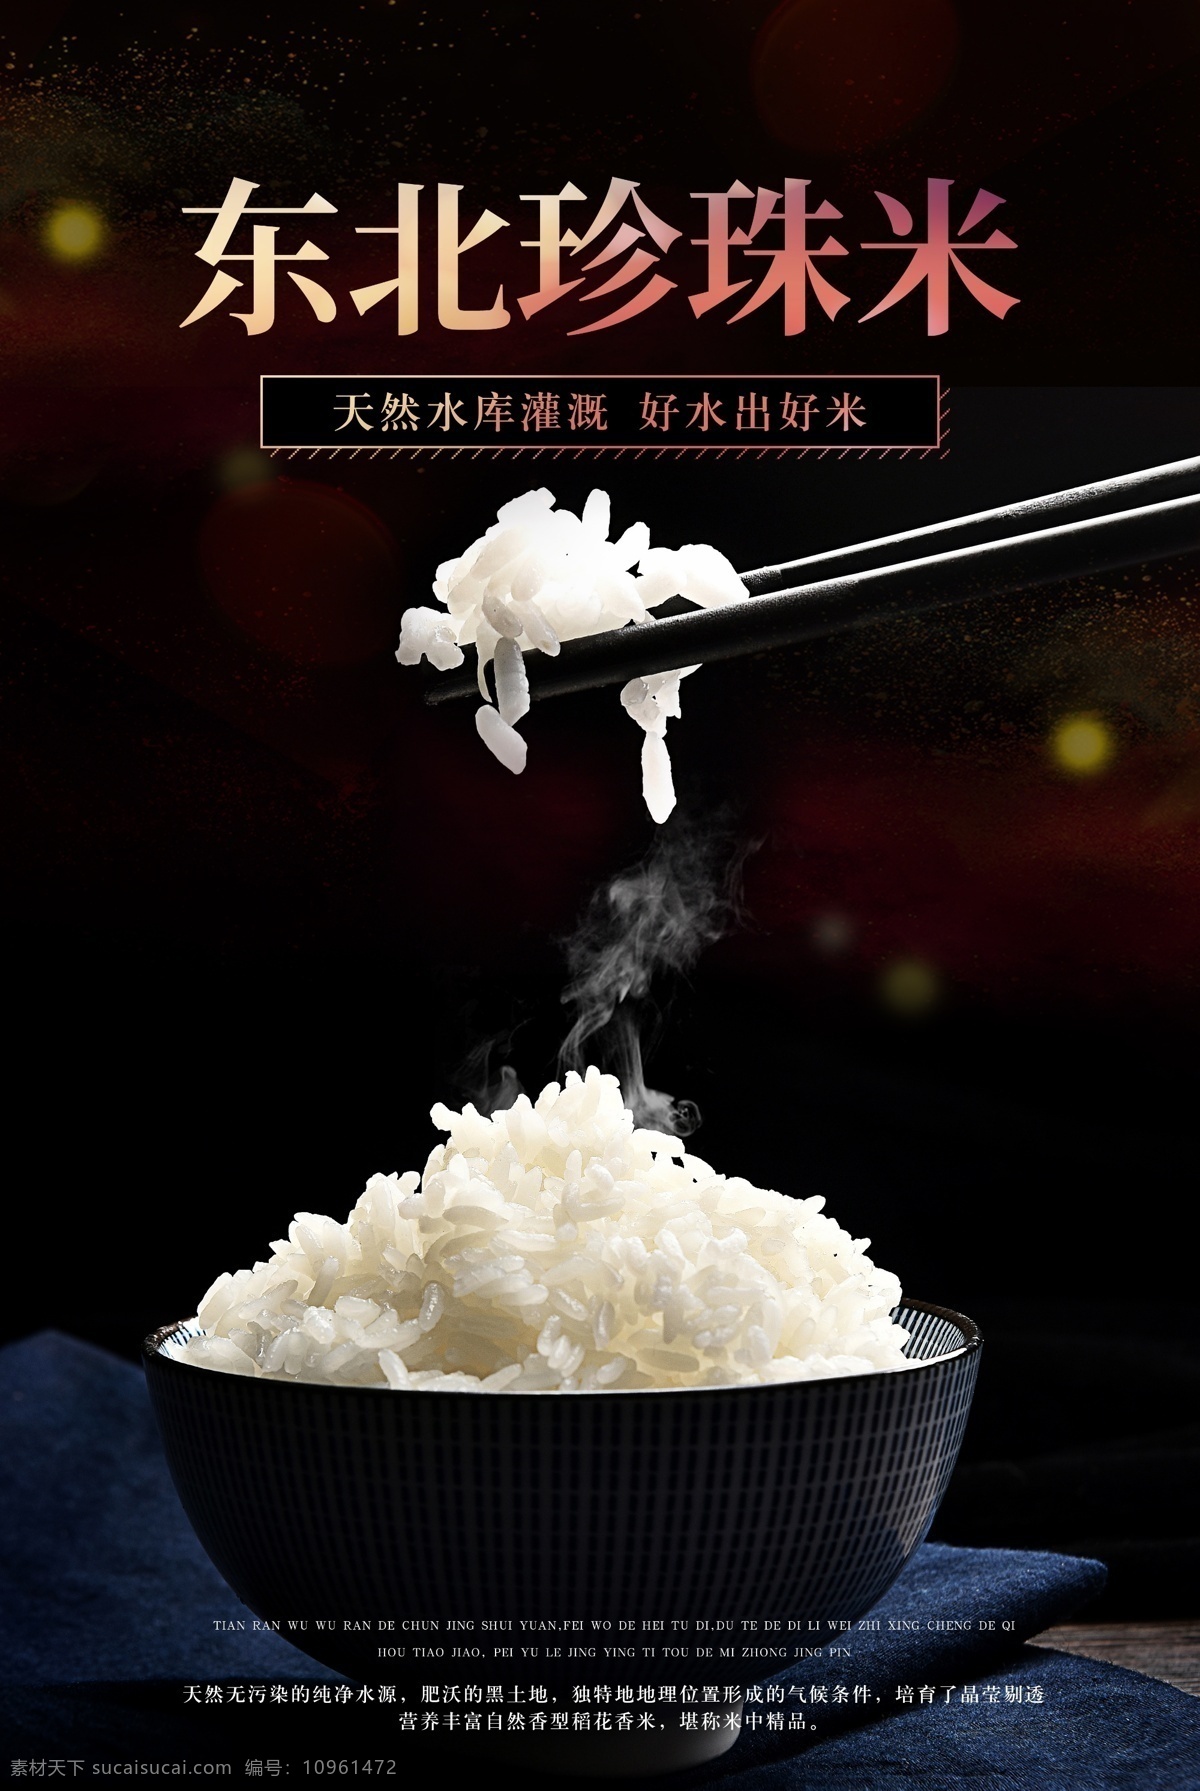 东北 珍珠米 宣传 活动 食 材 主食 海报 东北珍珠米 食材